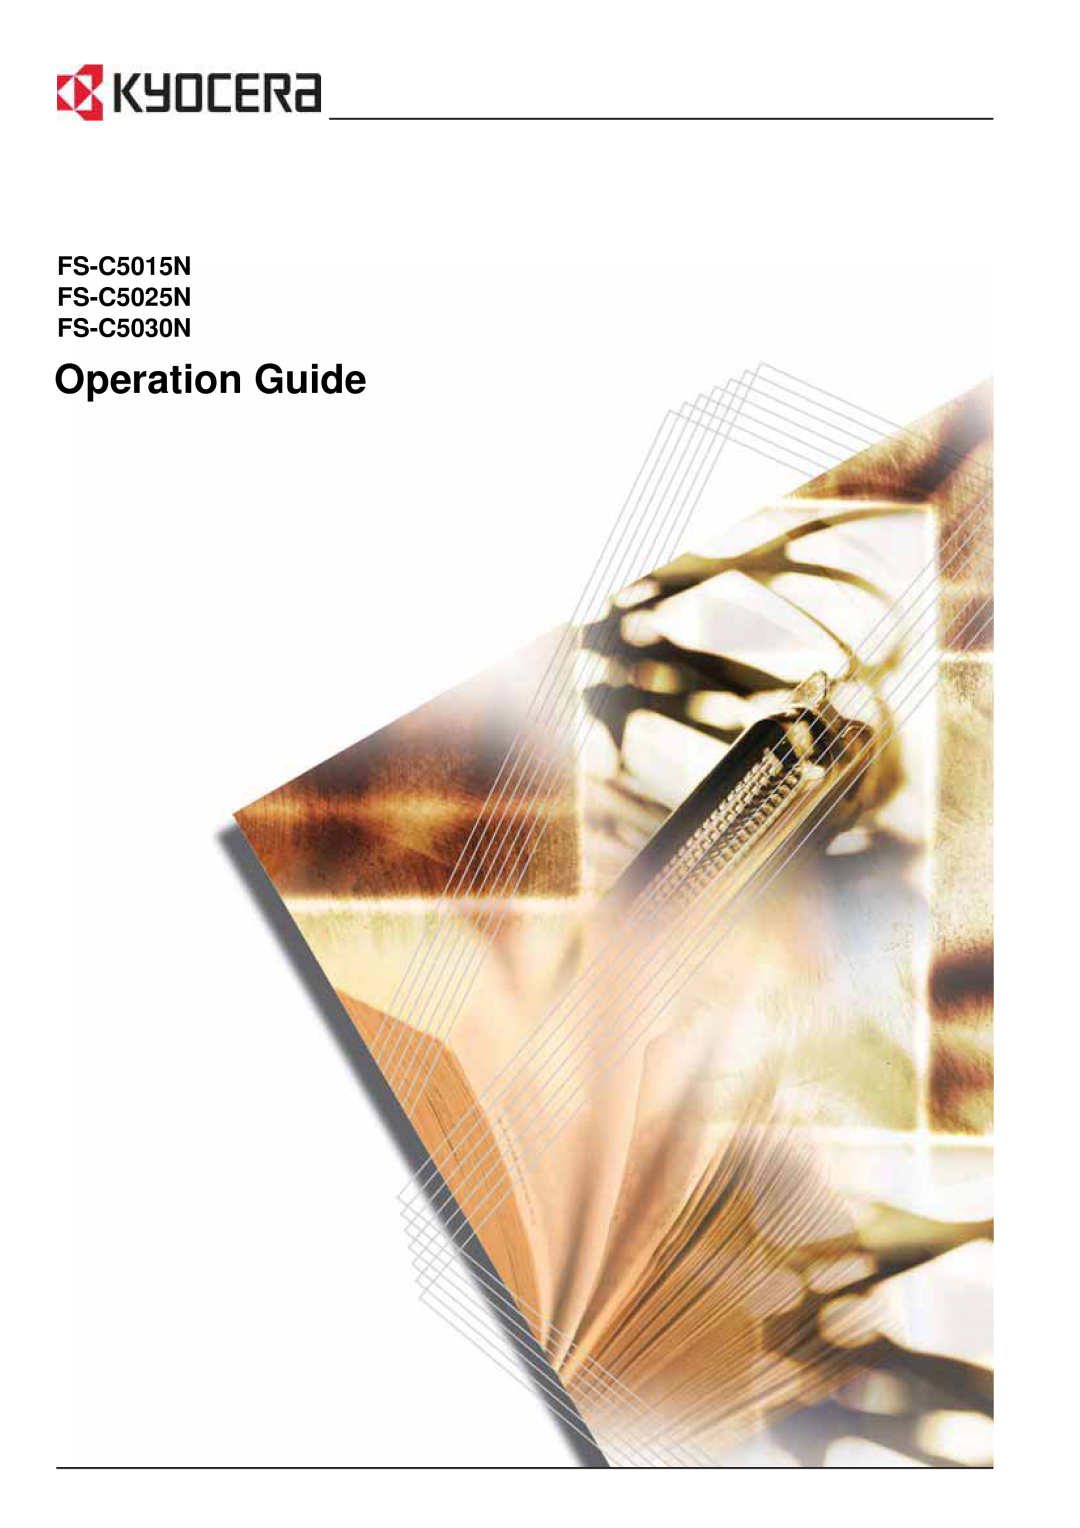 Kyocera manual Operation Guide, FS-C5015N FS-C5025N FS-C5030N 